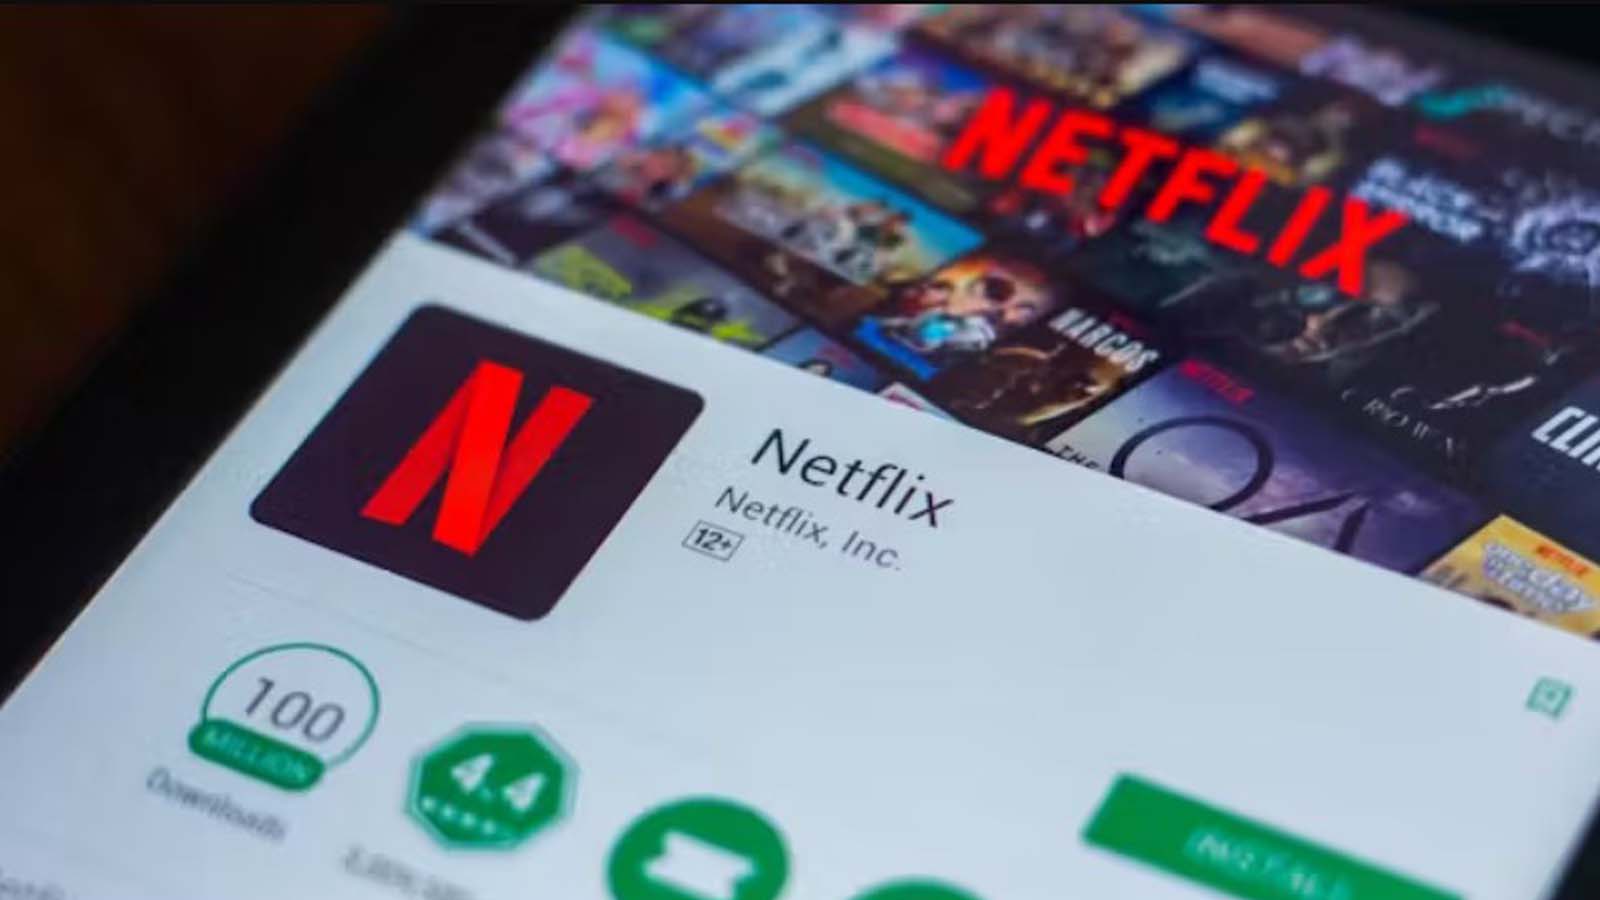 La complessità del problema e il dubbio, chi è responsabile del calo di qualità di Netflix?